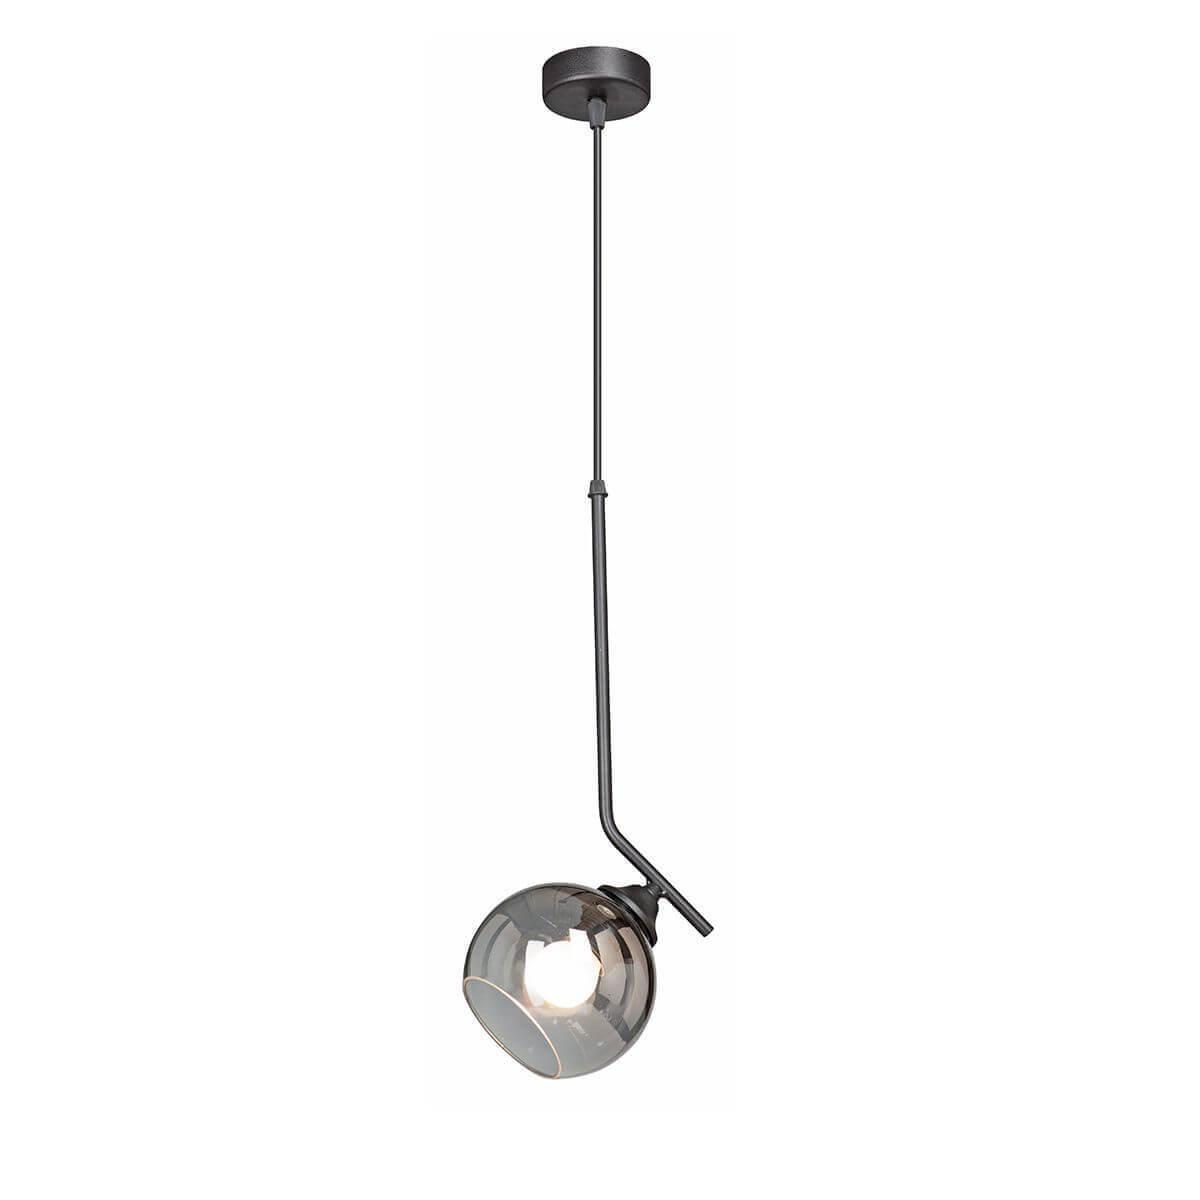 Подвесной светильник Vitaluce V4395-1/1S подвесной светильник newport 31101 s nickel м0056494